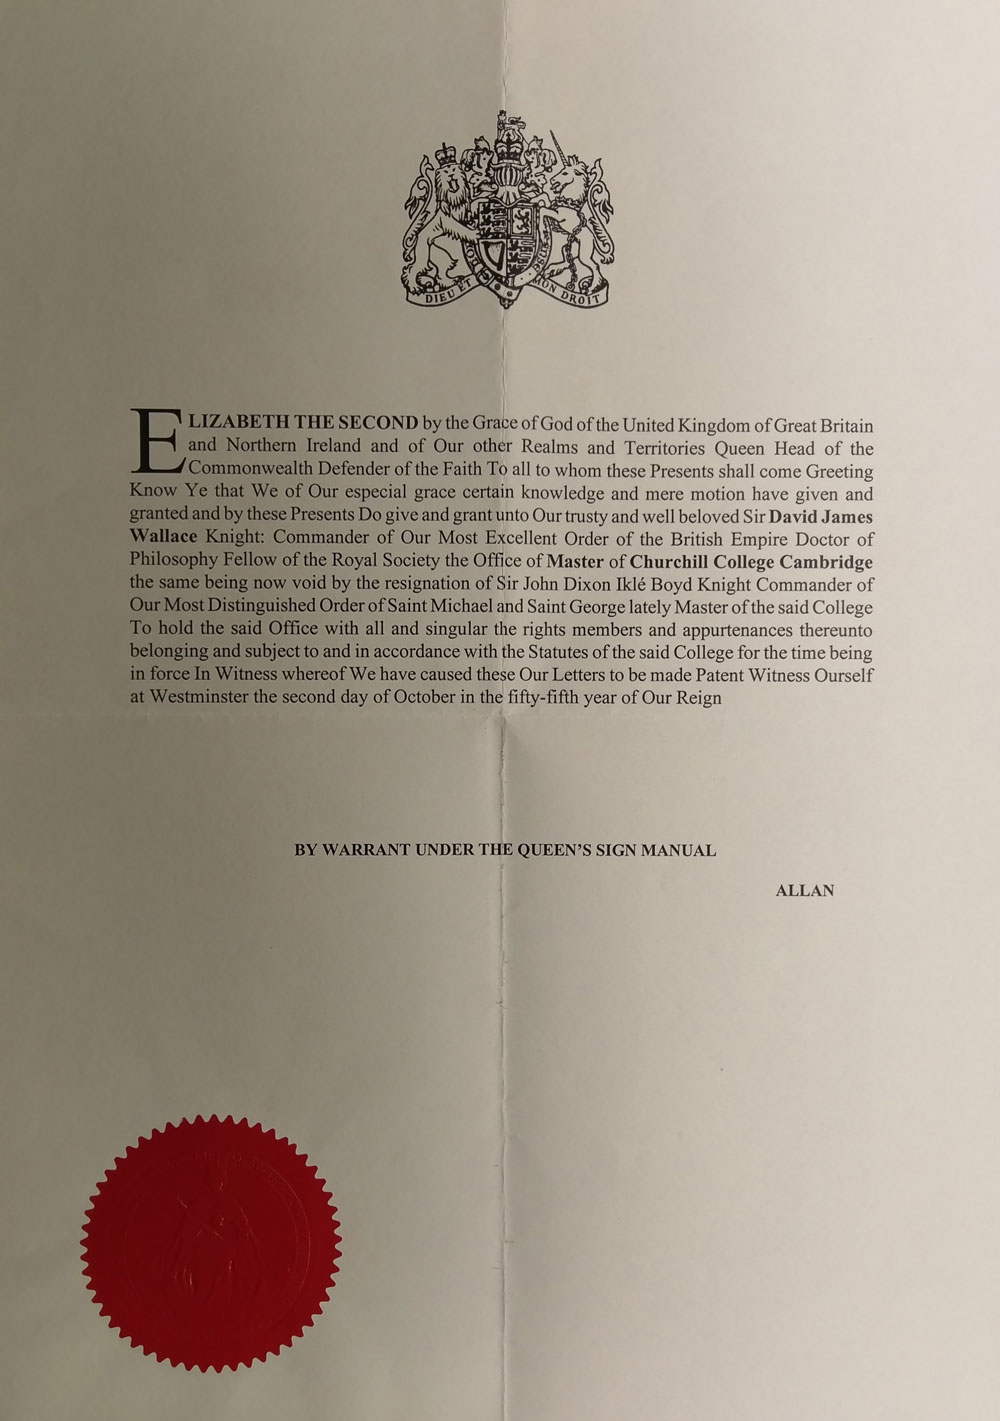 Royal Warrant appointing Sir David Wallace as Master